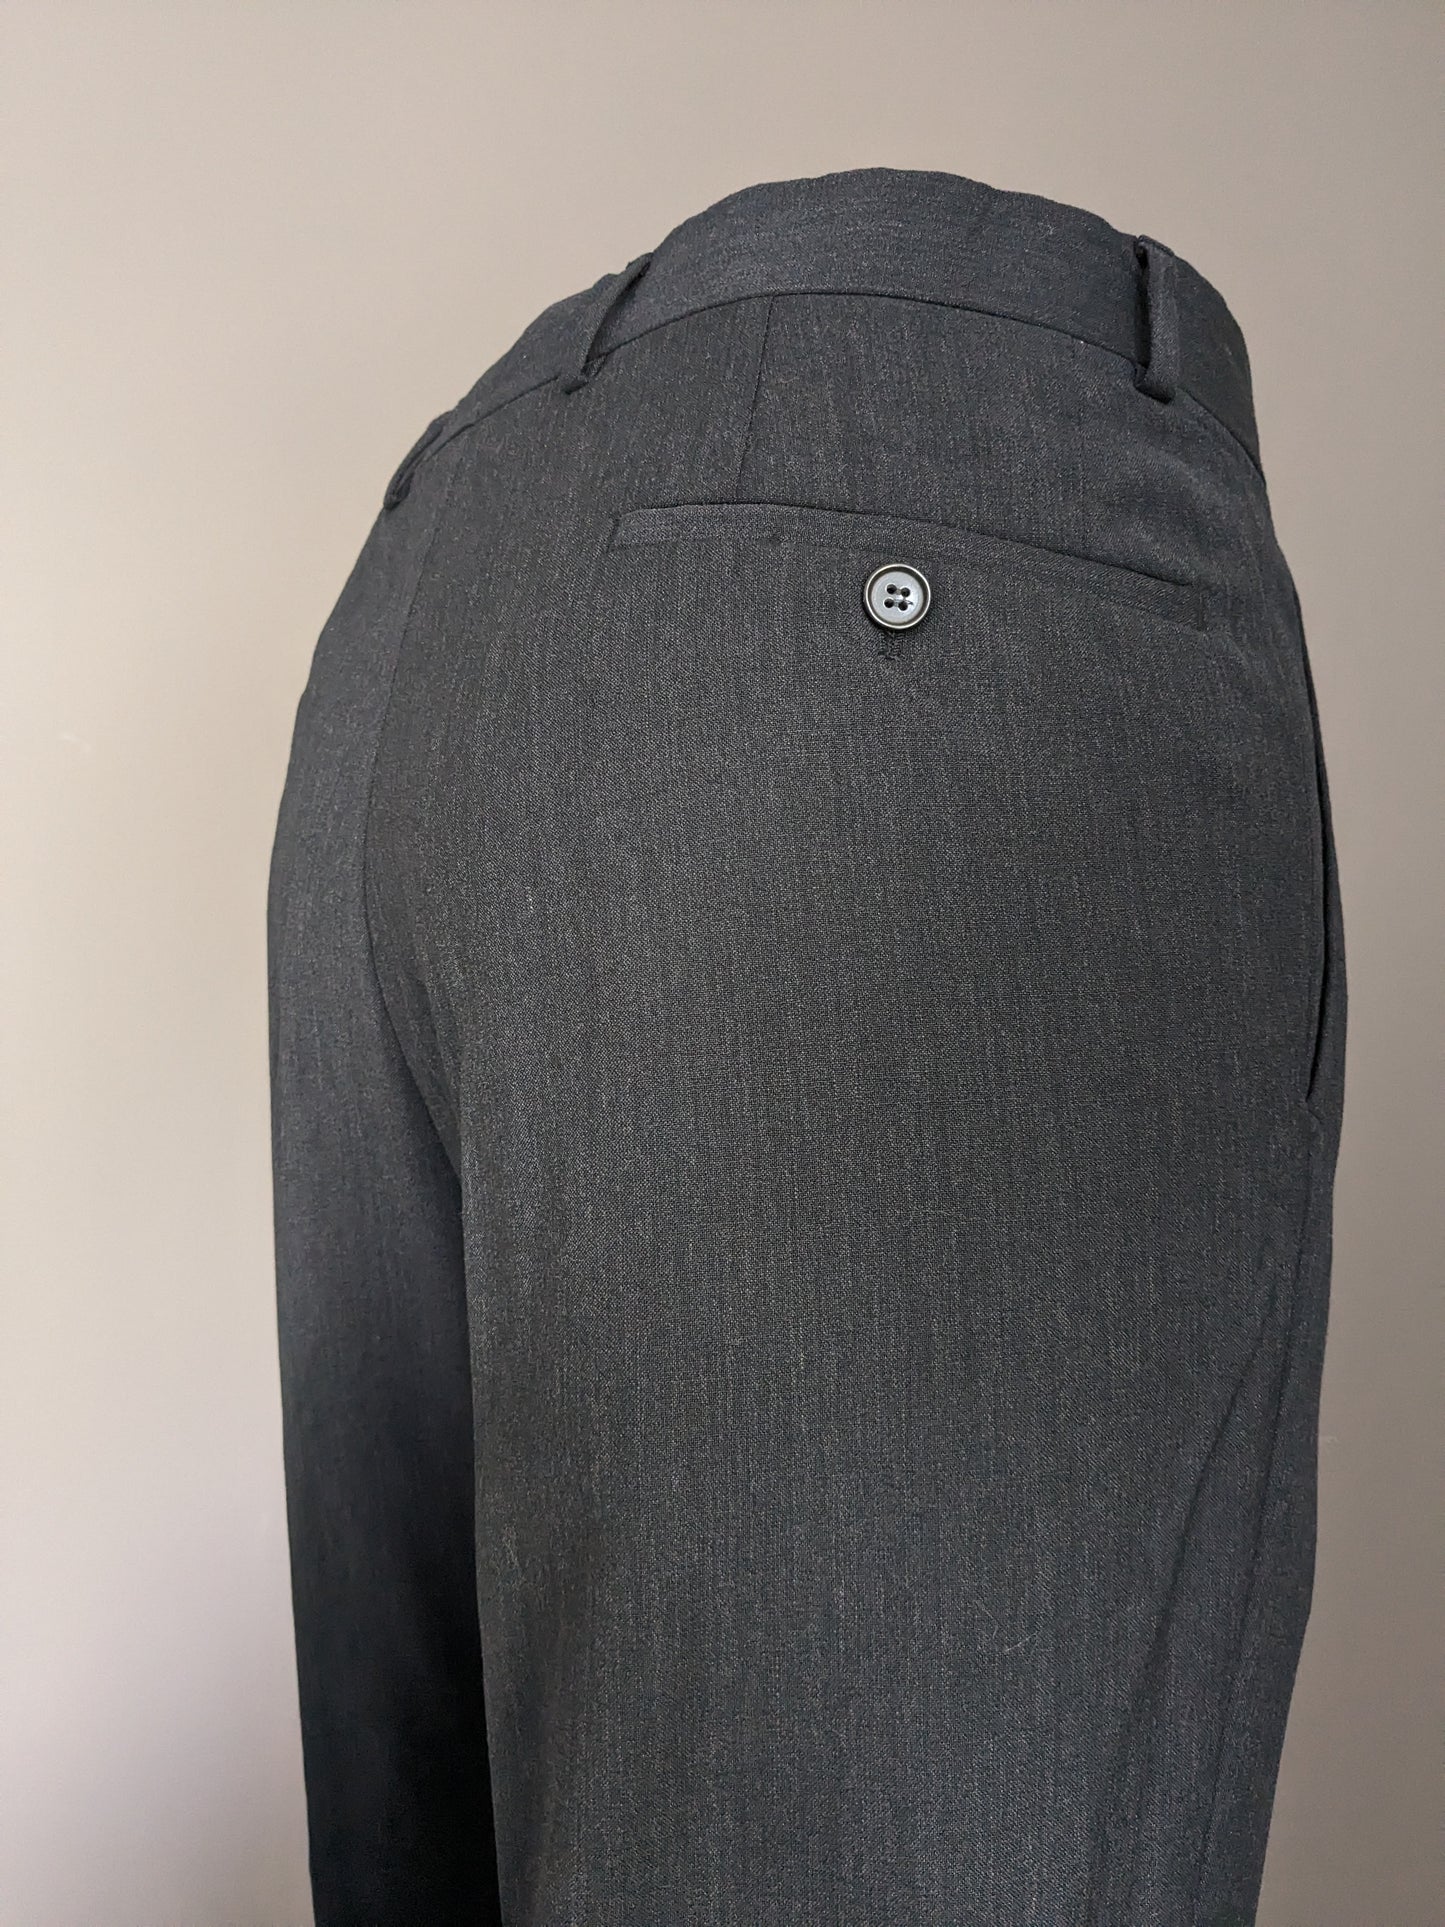 Pantalones con cubierta. Gris oscuro mezclado. Tamaño 52 / L. #501.